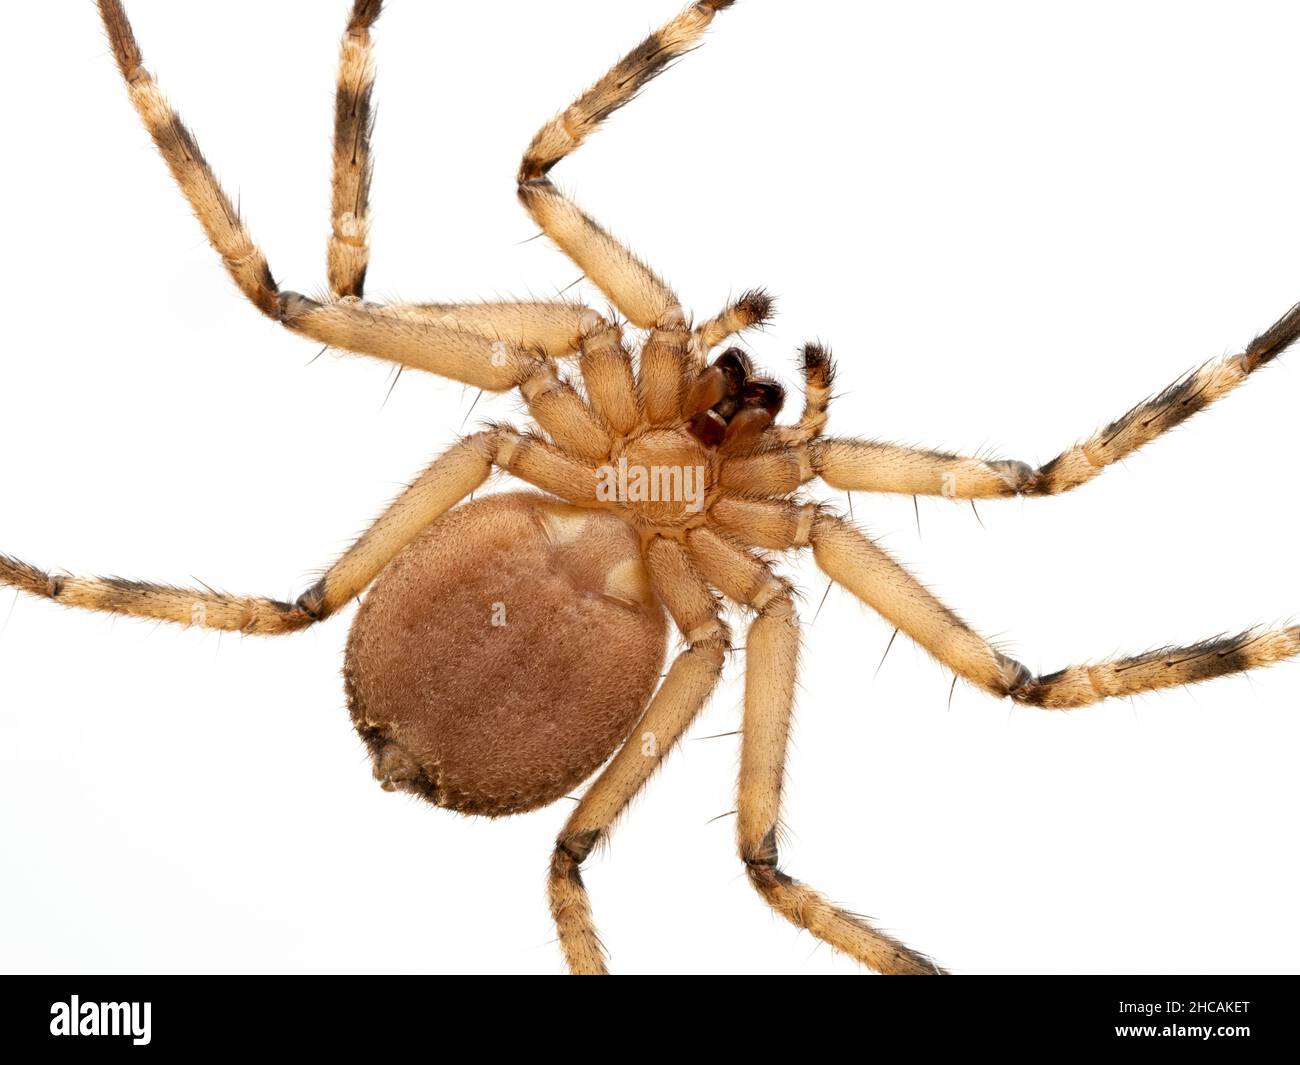 Nahaufnahme der Unterseite einer Plattspinne (Selenops rediatus), die die Morphologie der echten Spinnen zeigt. Isoliert Stockfoto